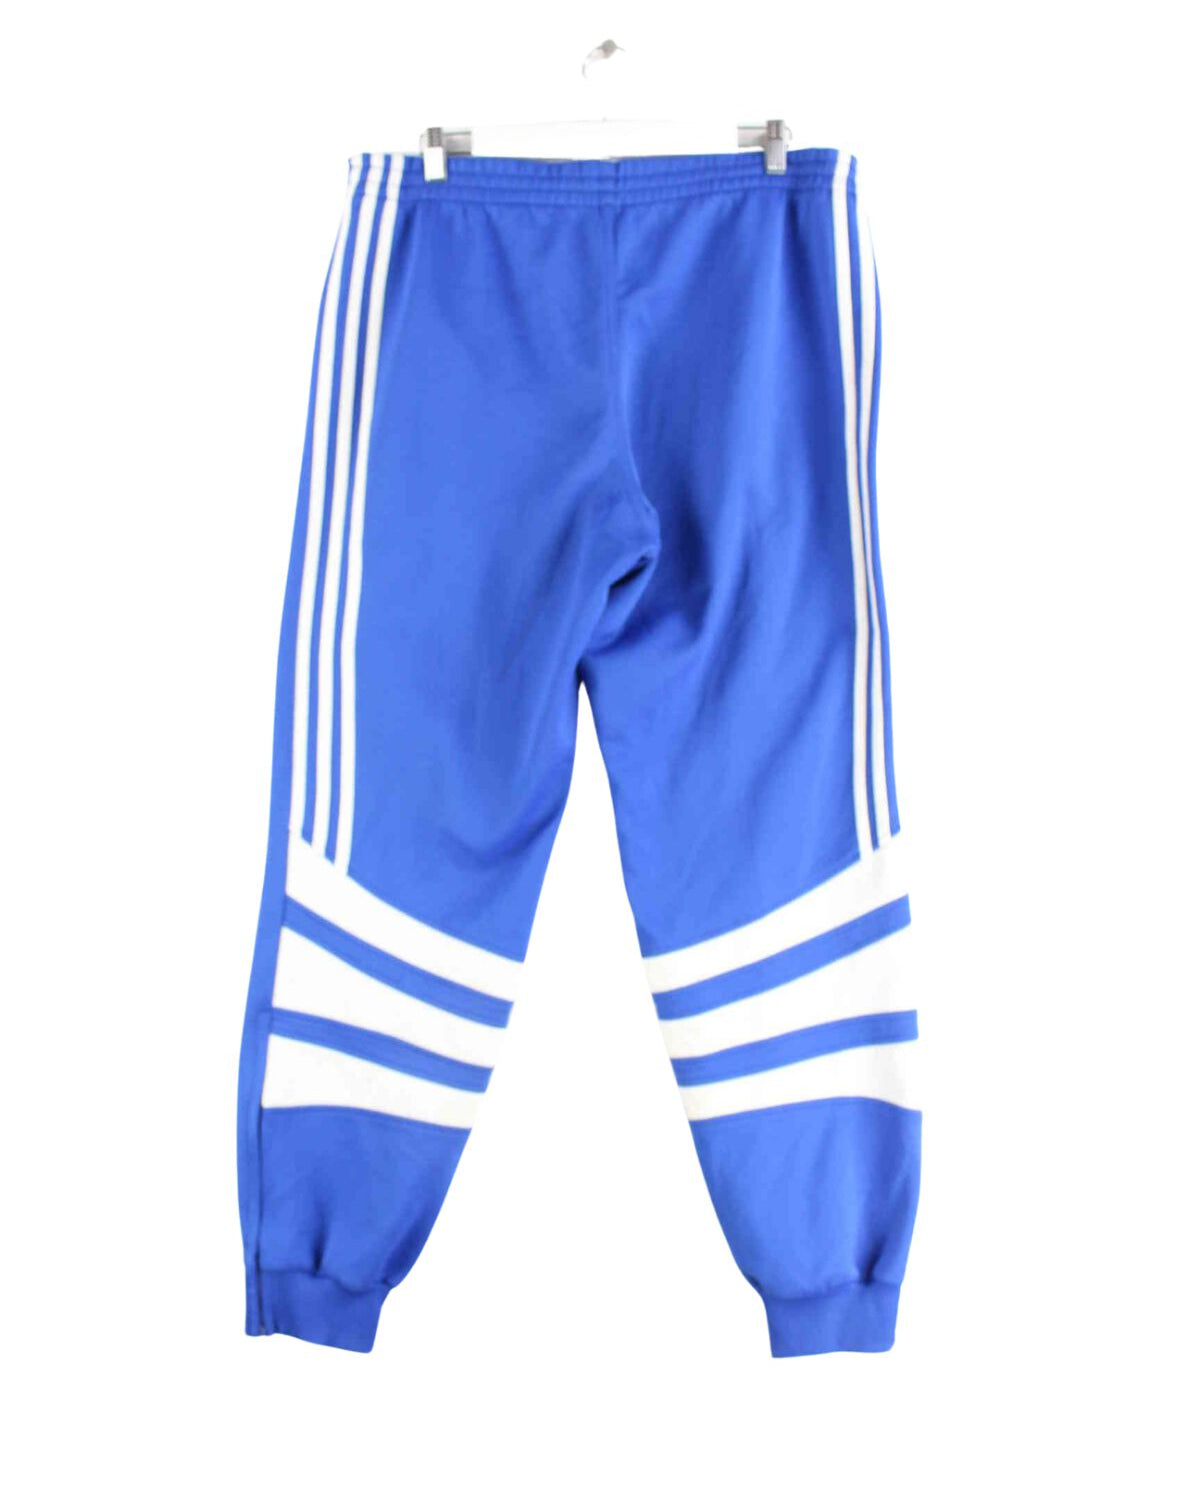 Adidas 80s Vintage 3-Stripes Trainingsjacke Blau L (back image)